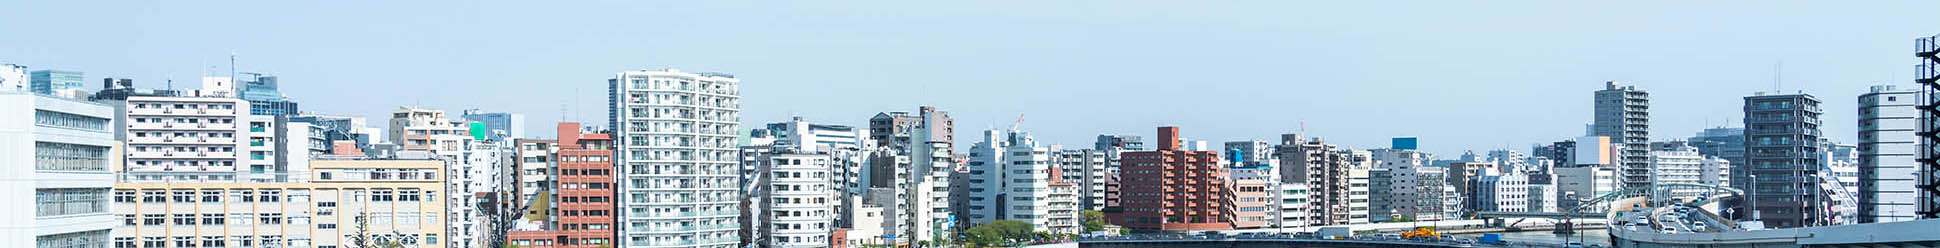 街のイメージ画像